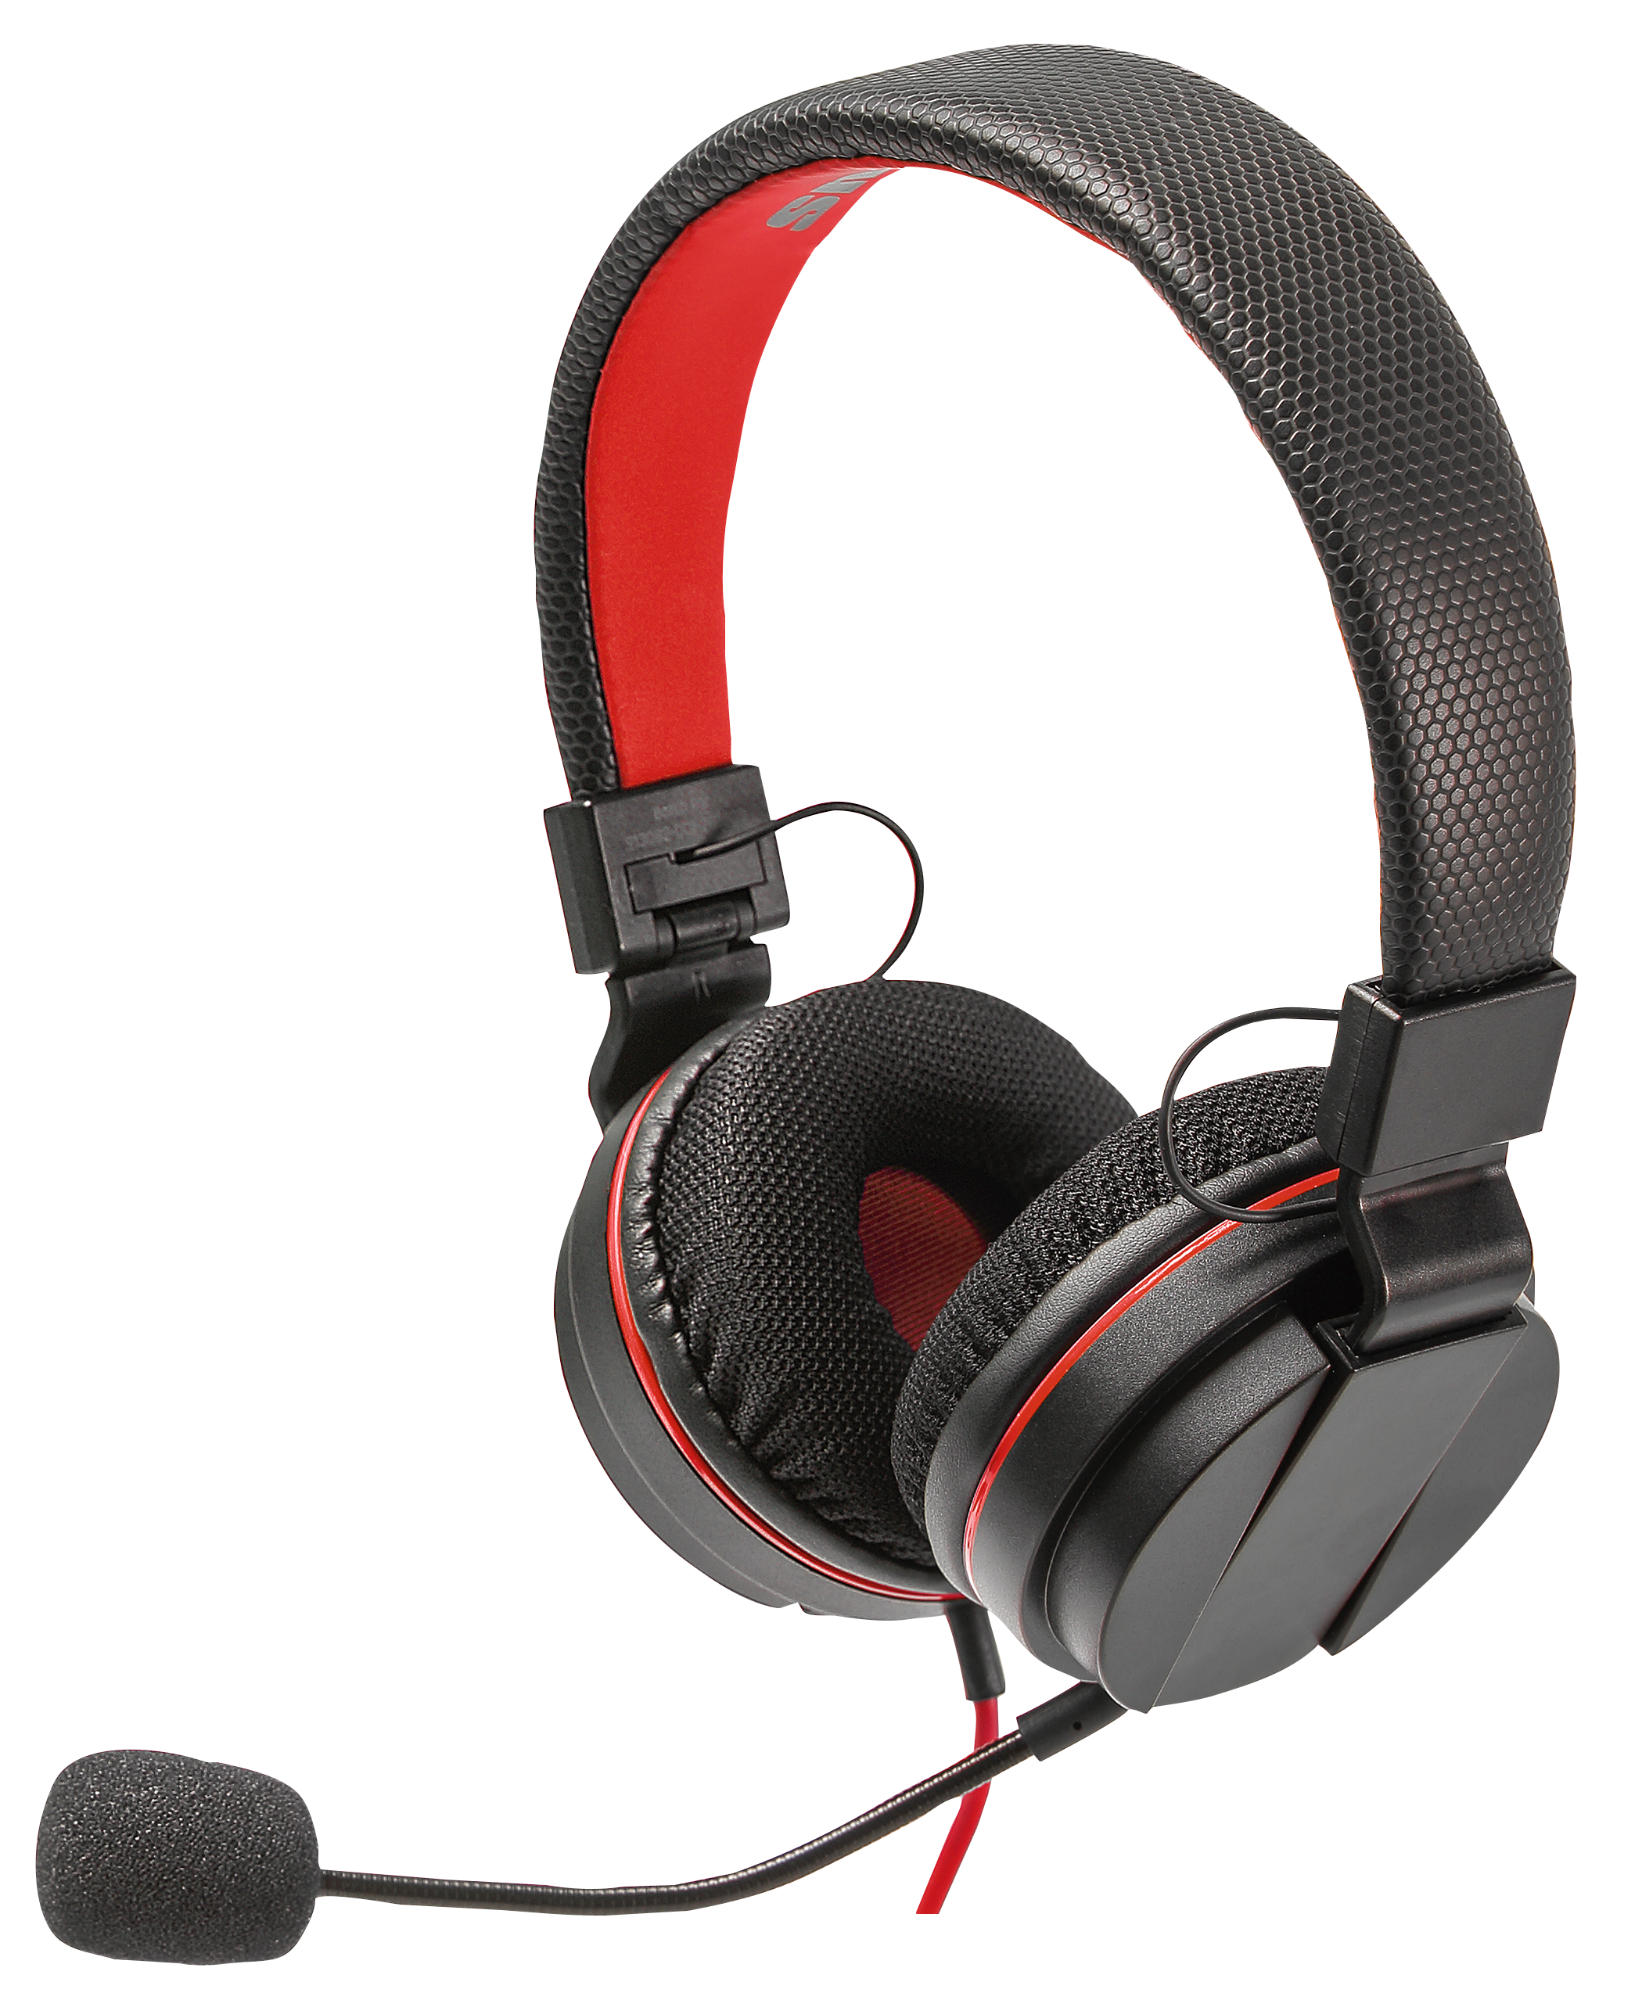 SNAKEBYTE SB913112, On-ear Gaming Headset Schwarz/Rot